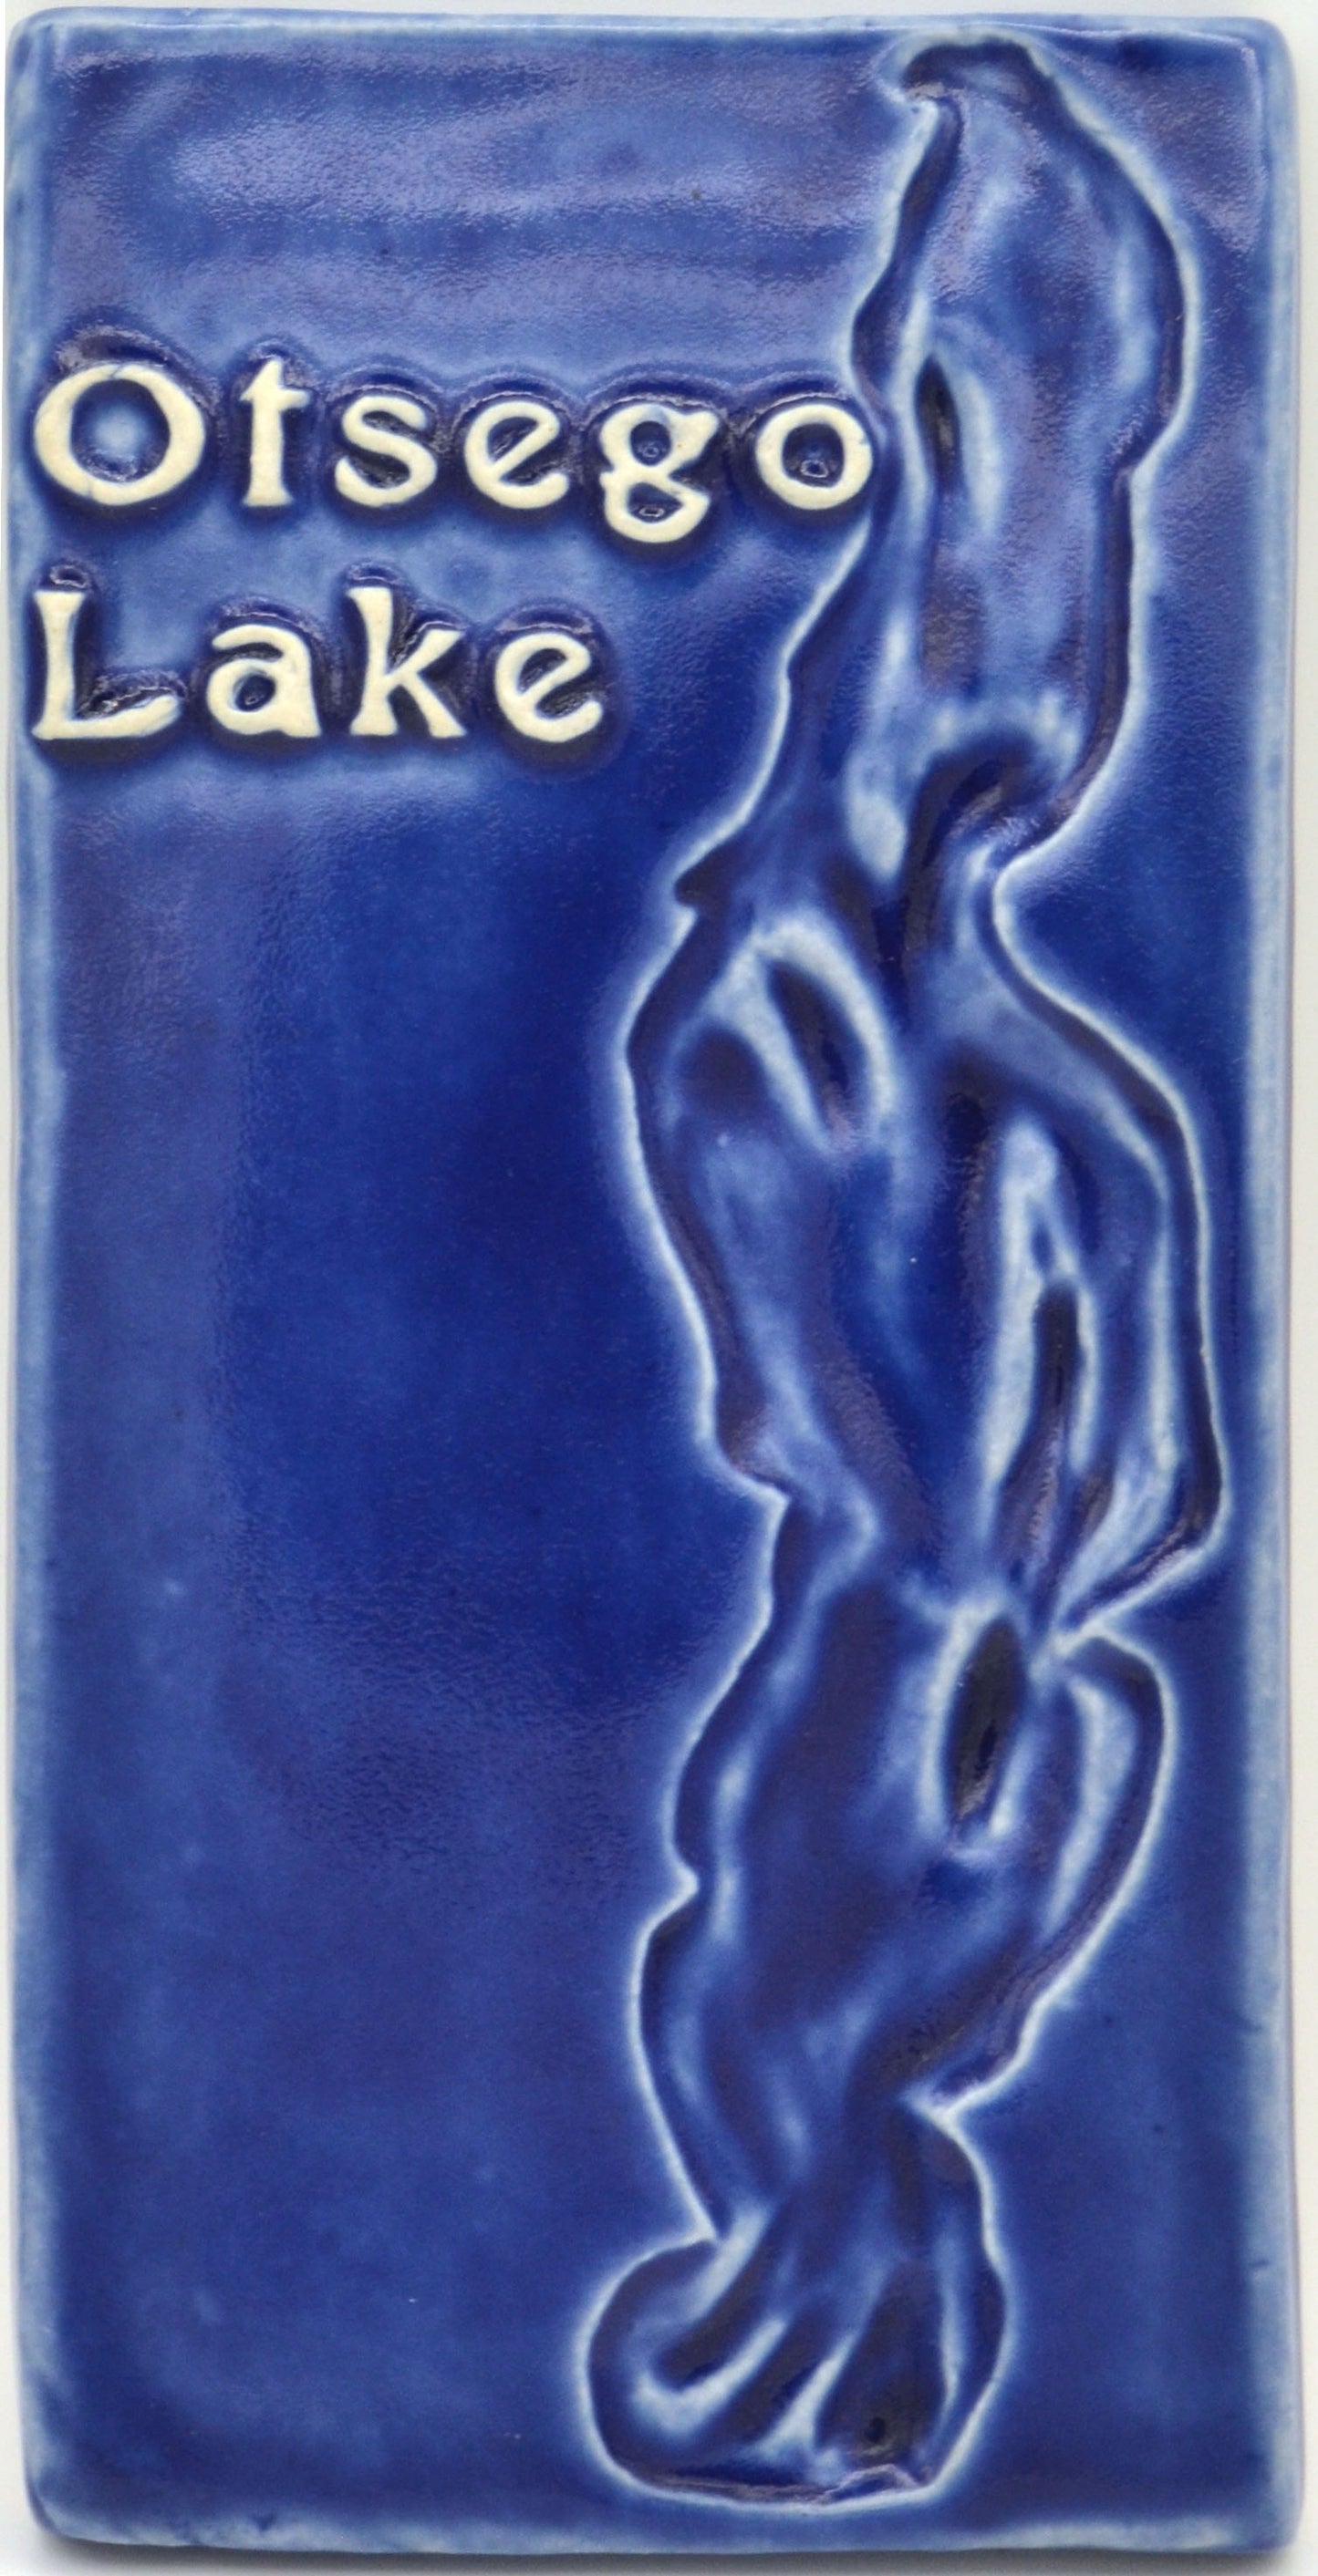 4x8 otsego lake blue